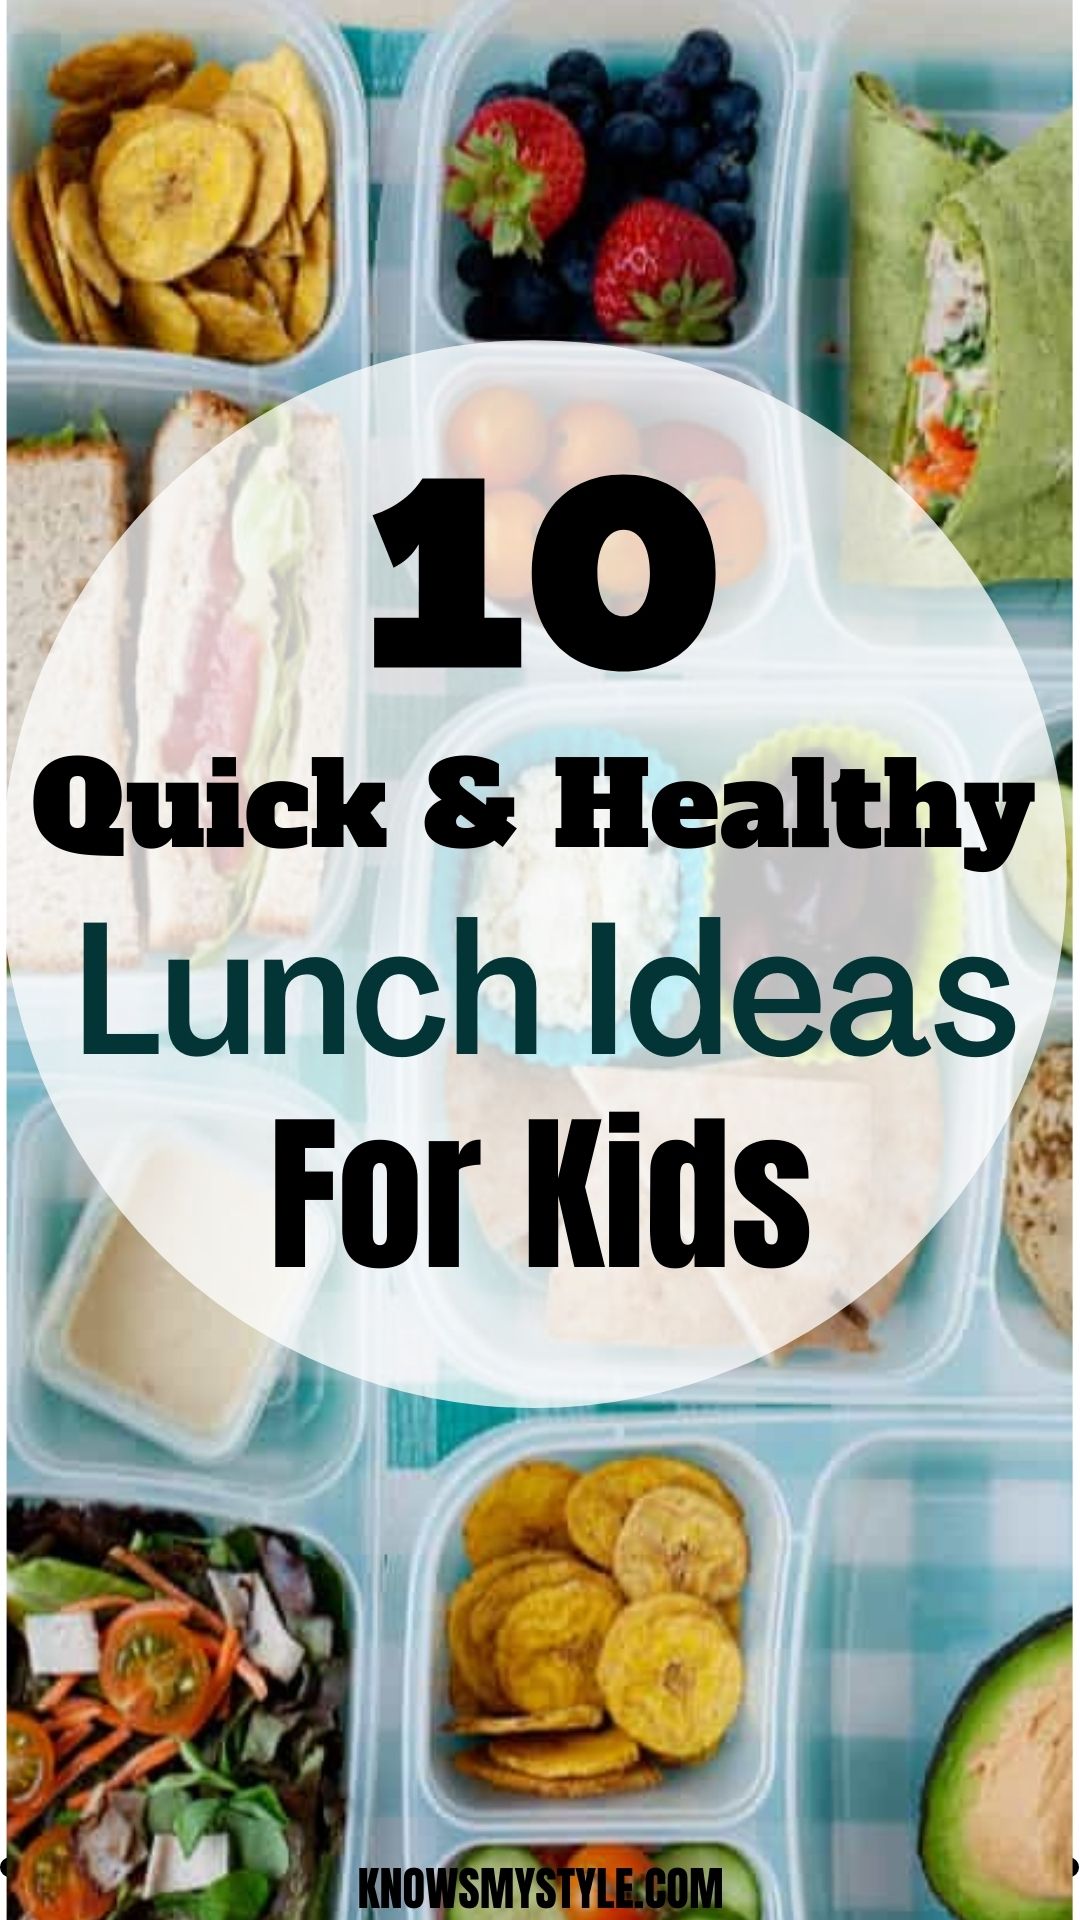 Healthy Kids Lunch Ideas For School